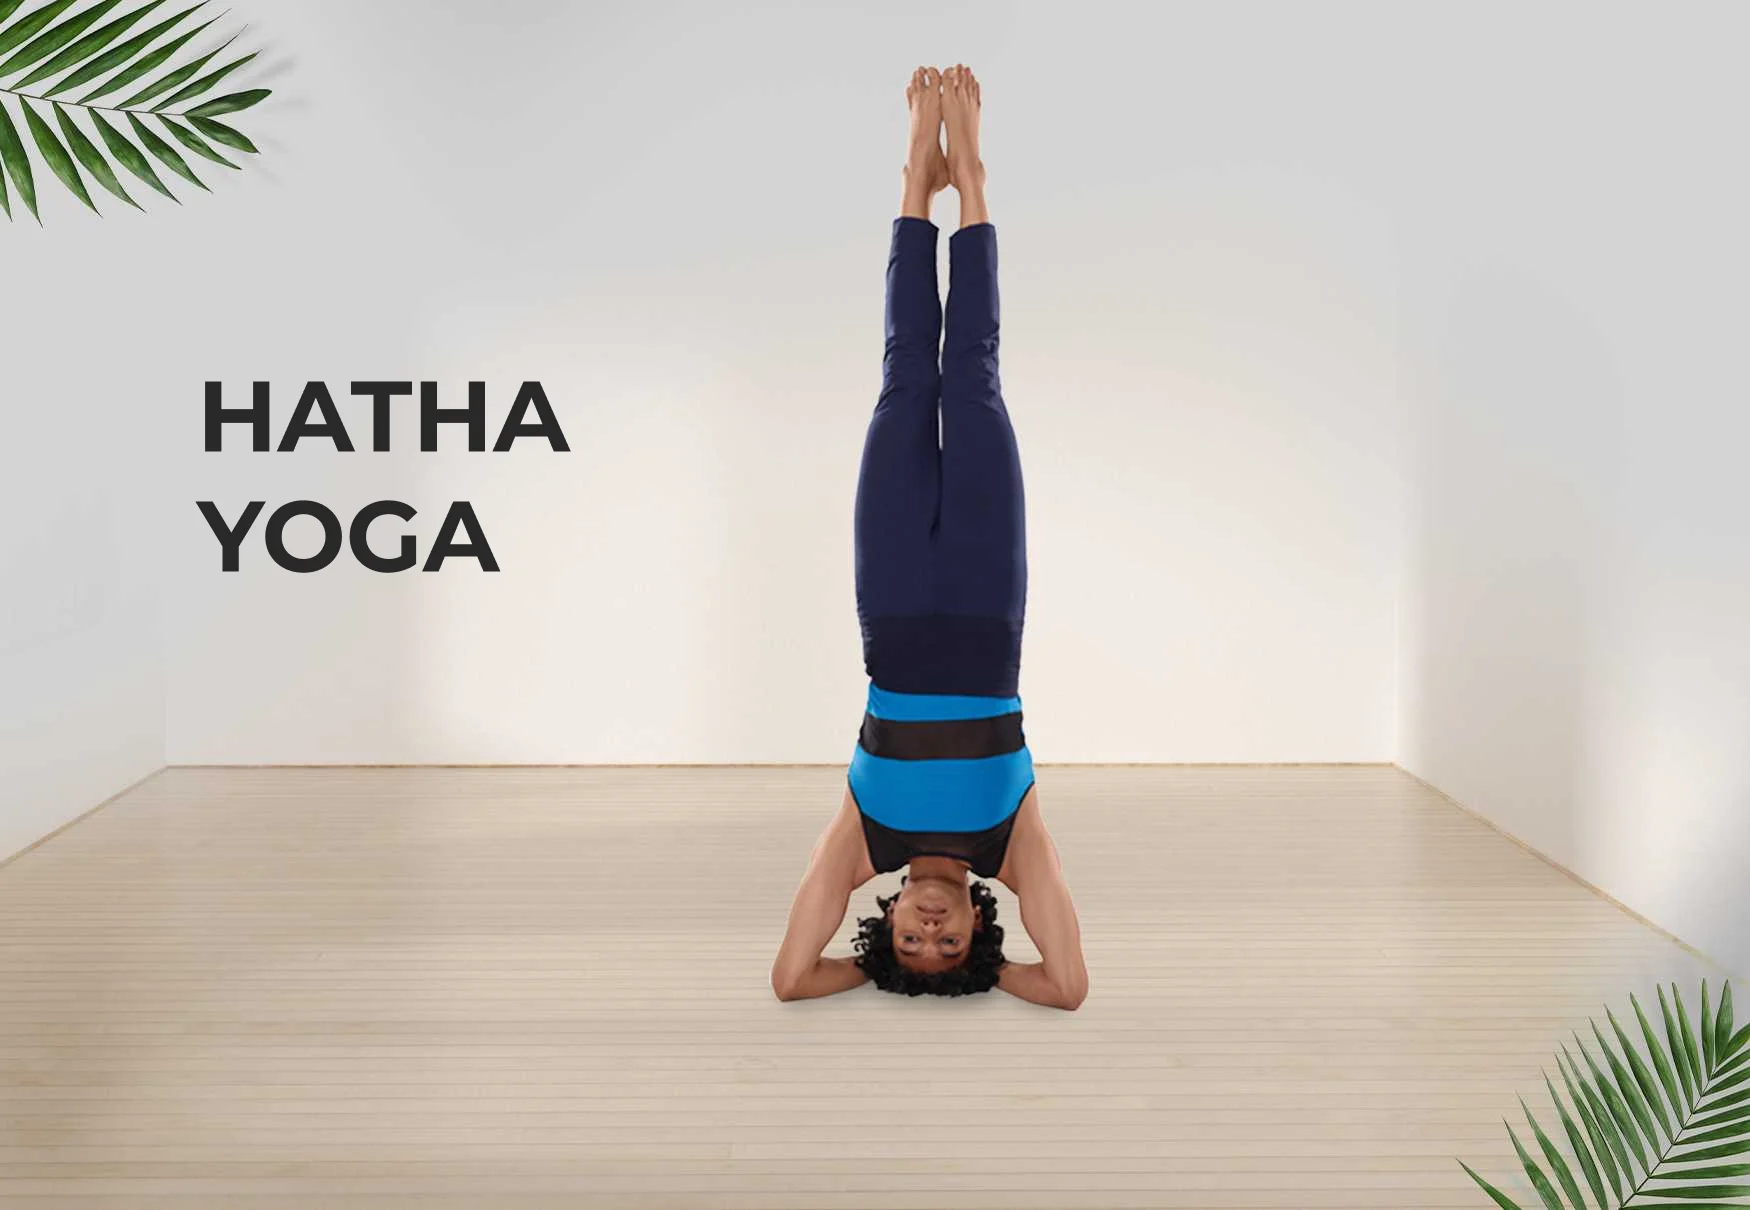 My favorite Asana ❤️😁 #mandukasana Next program #yogasanas 📍Novi Sad  17/18. Novembar #ishahathayoga #yogaeveryday #yogaeverywhere #yogaathome...  | By Tijana Stupar Isha Hatha Yoga TeacherFacebook